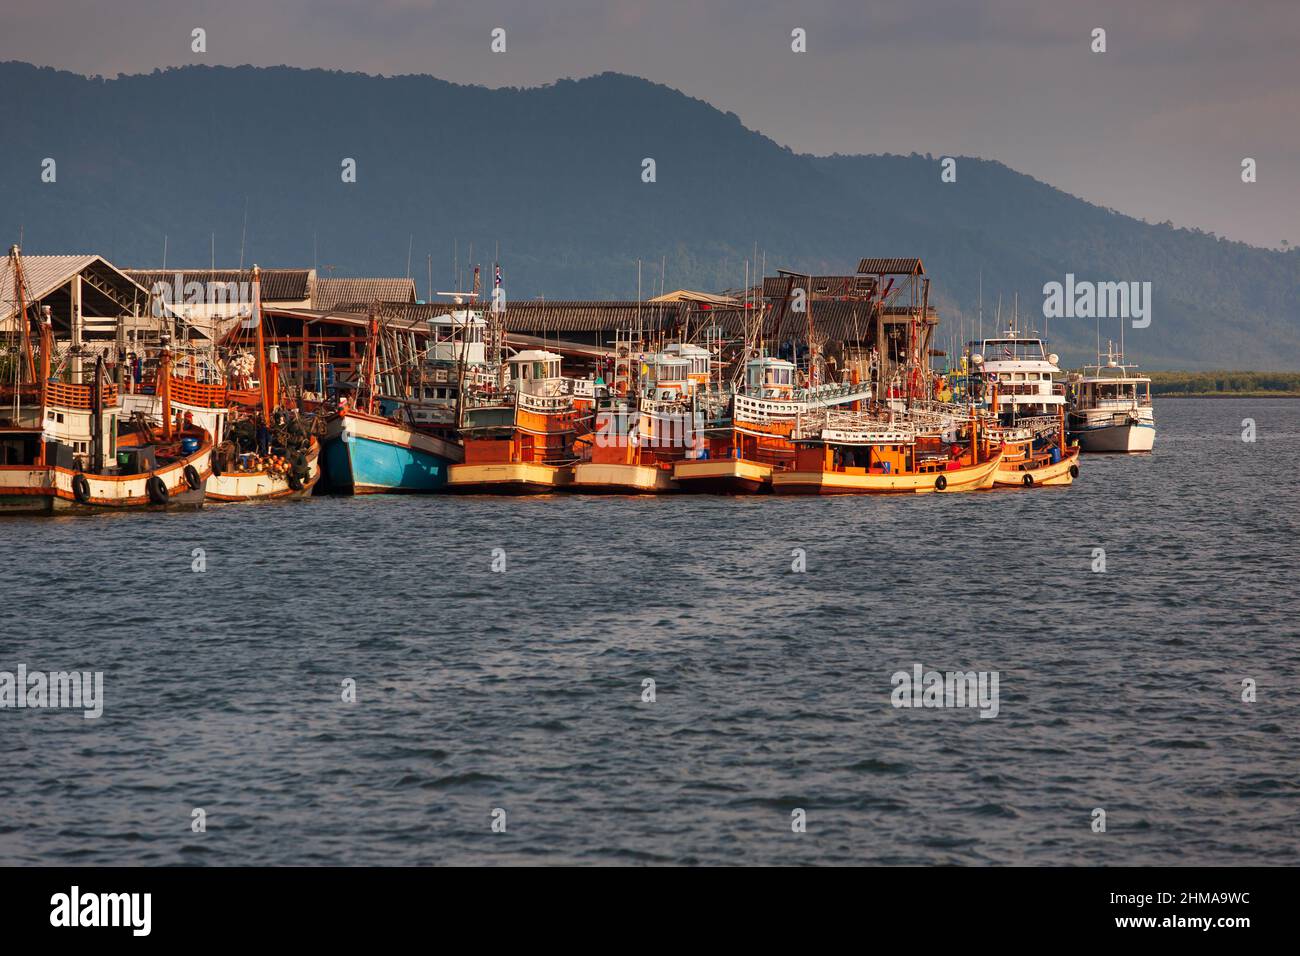 Ein Fischereihafen in der Andamanensee oder Burma See in der Nähe der Grenze zu Thailand und Myanmar. Stockfoto